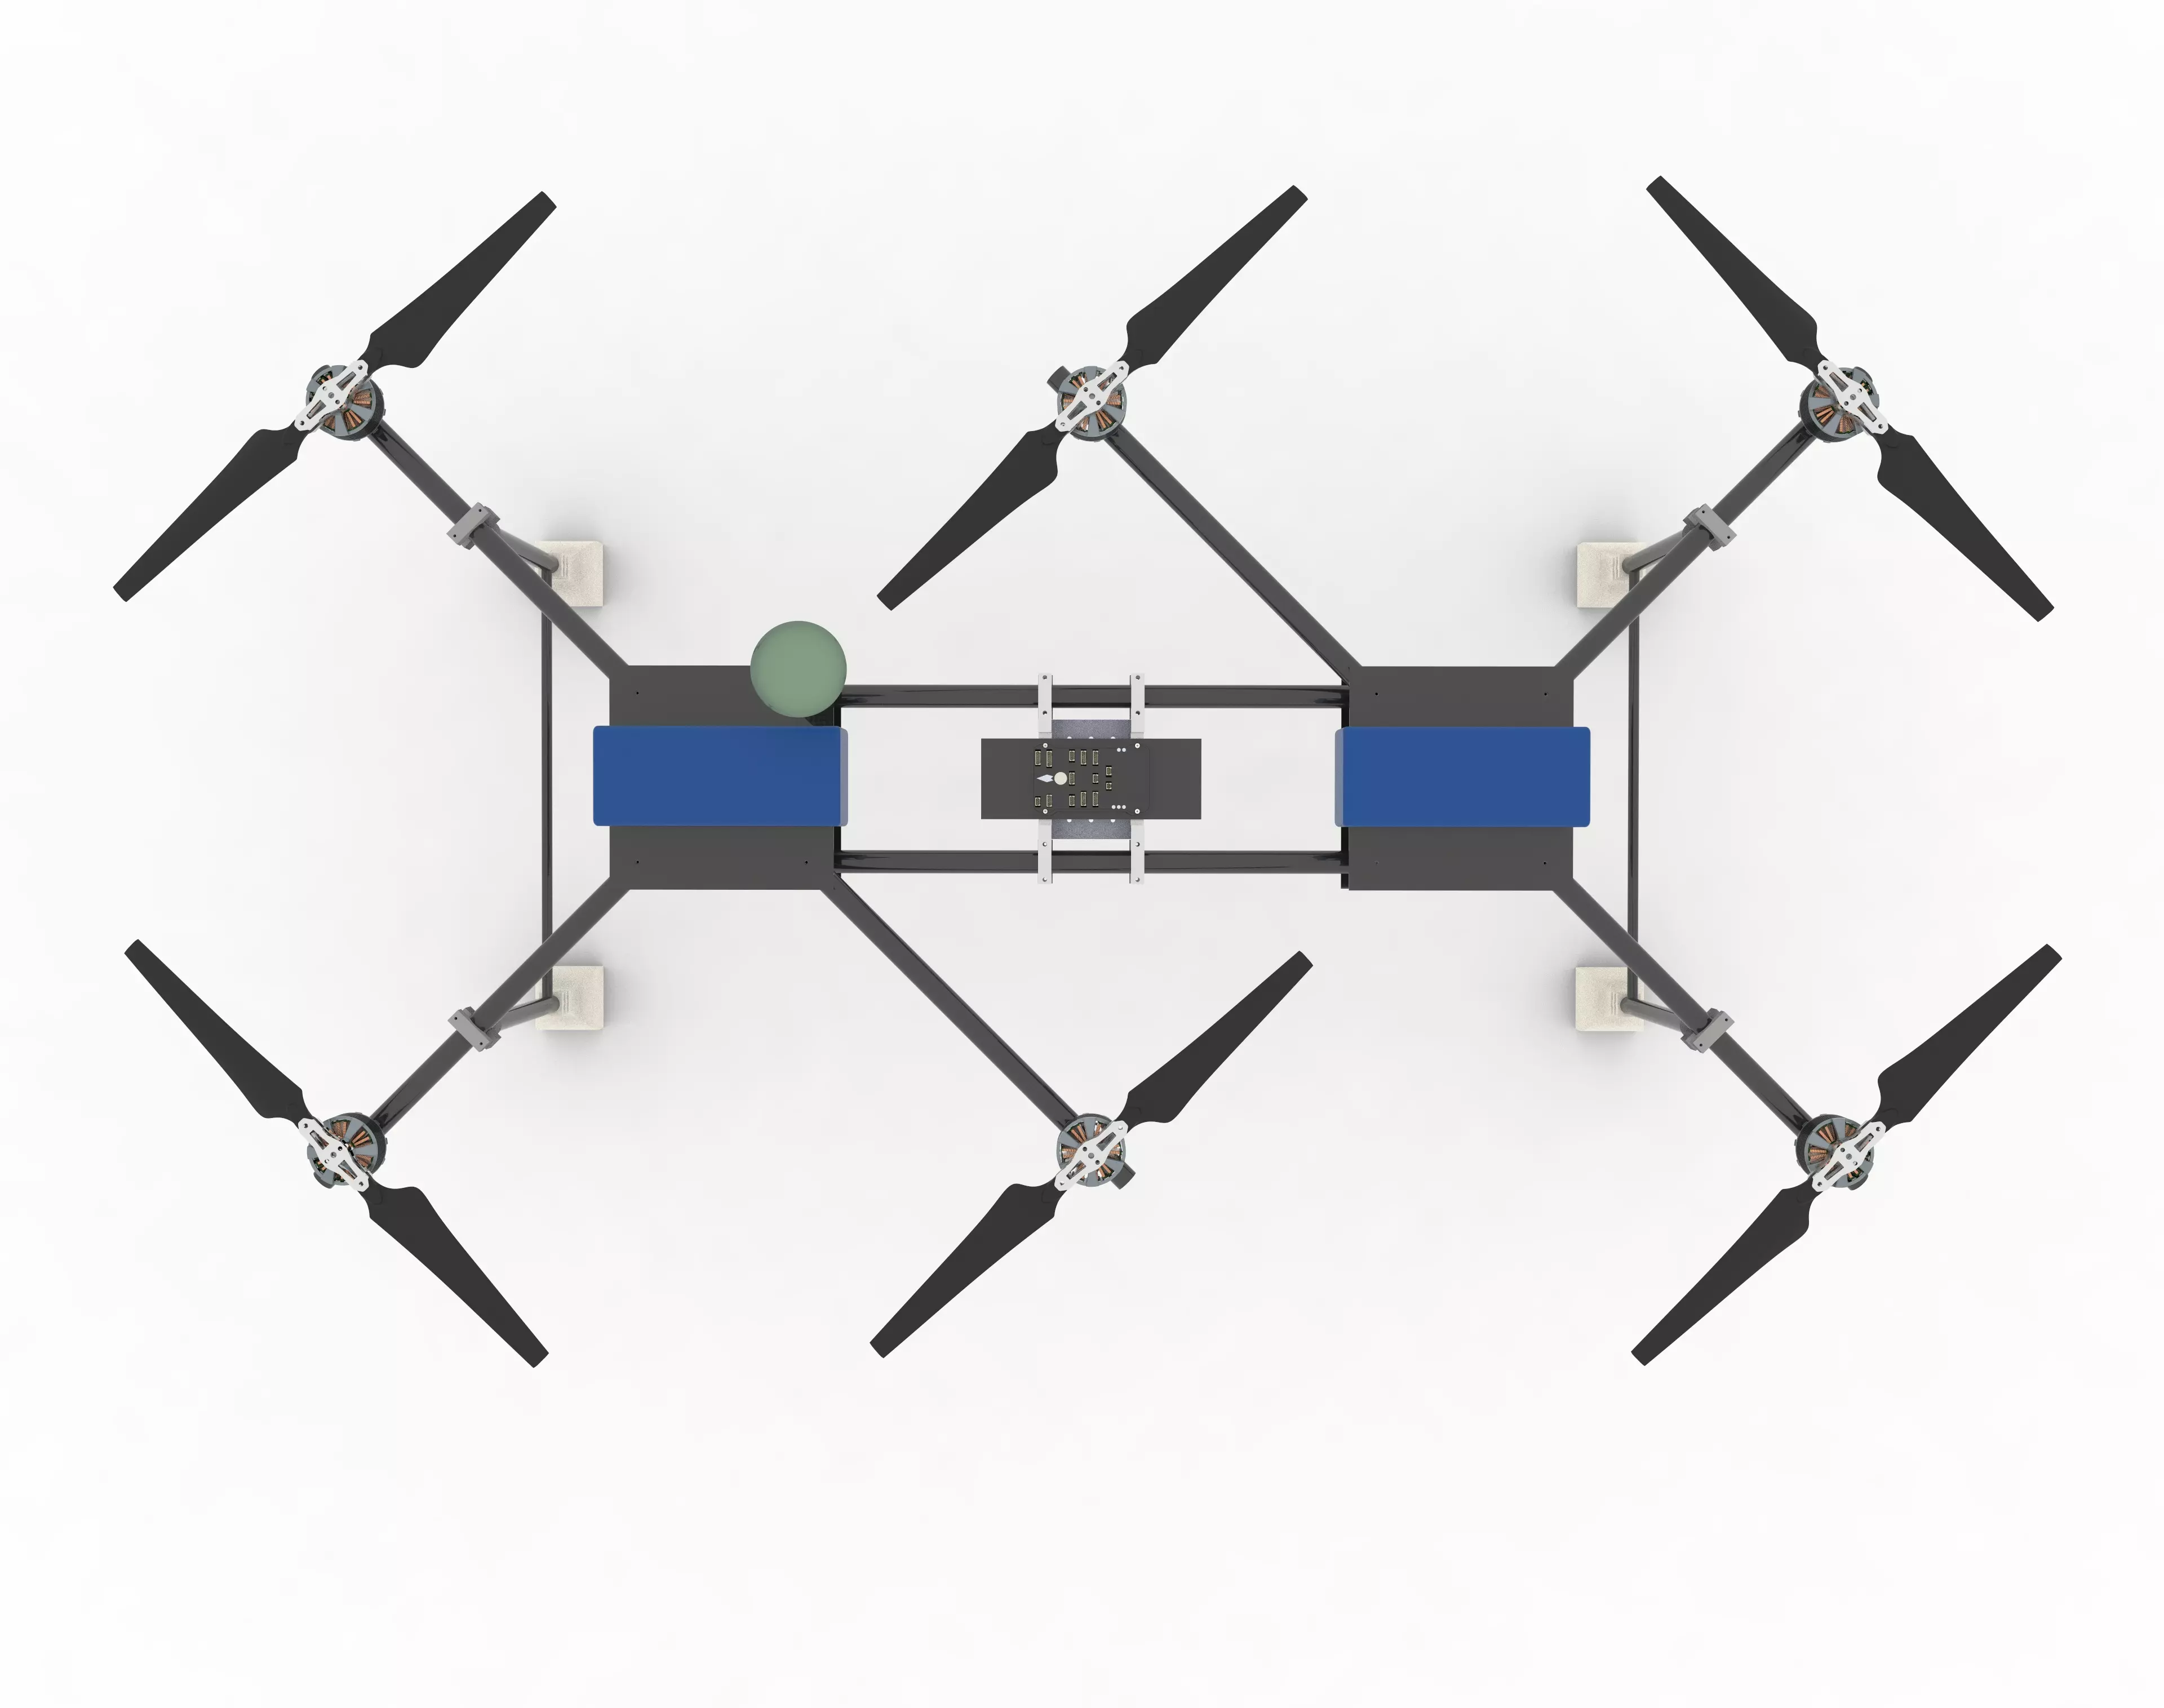 Bachelorarbeit Systemtechnik: Entwicklung einer Quadrocopter-Plattform mit  Pixhawk-Board